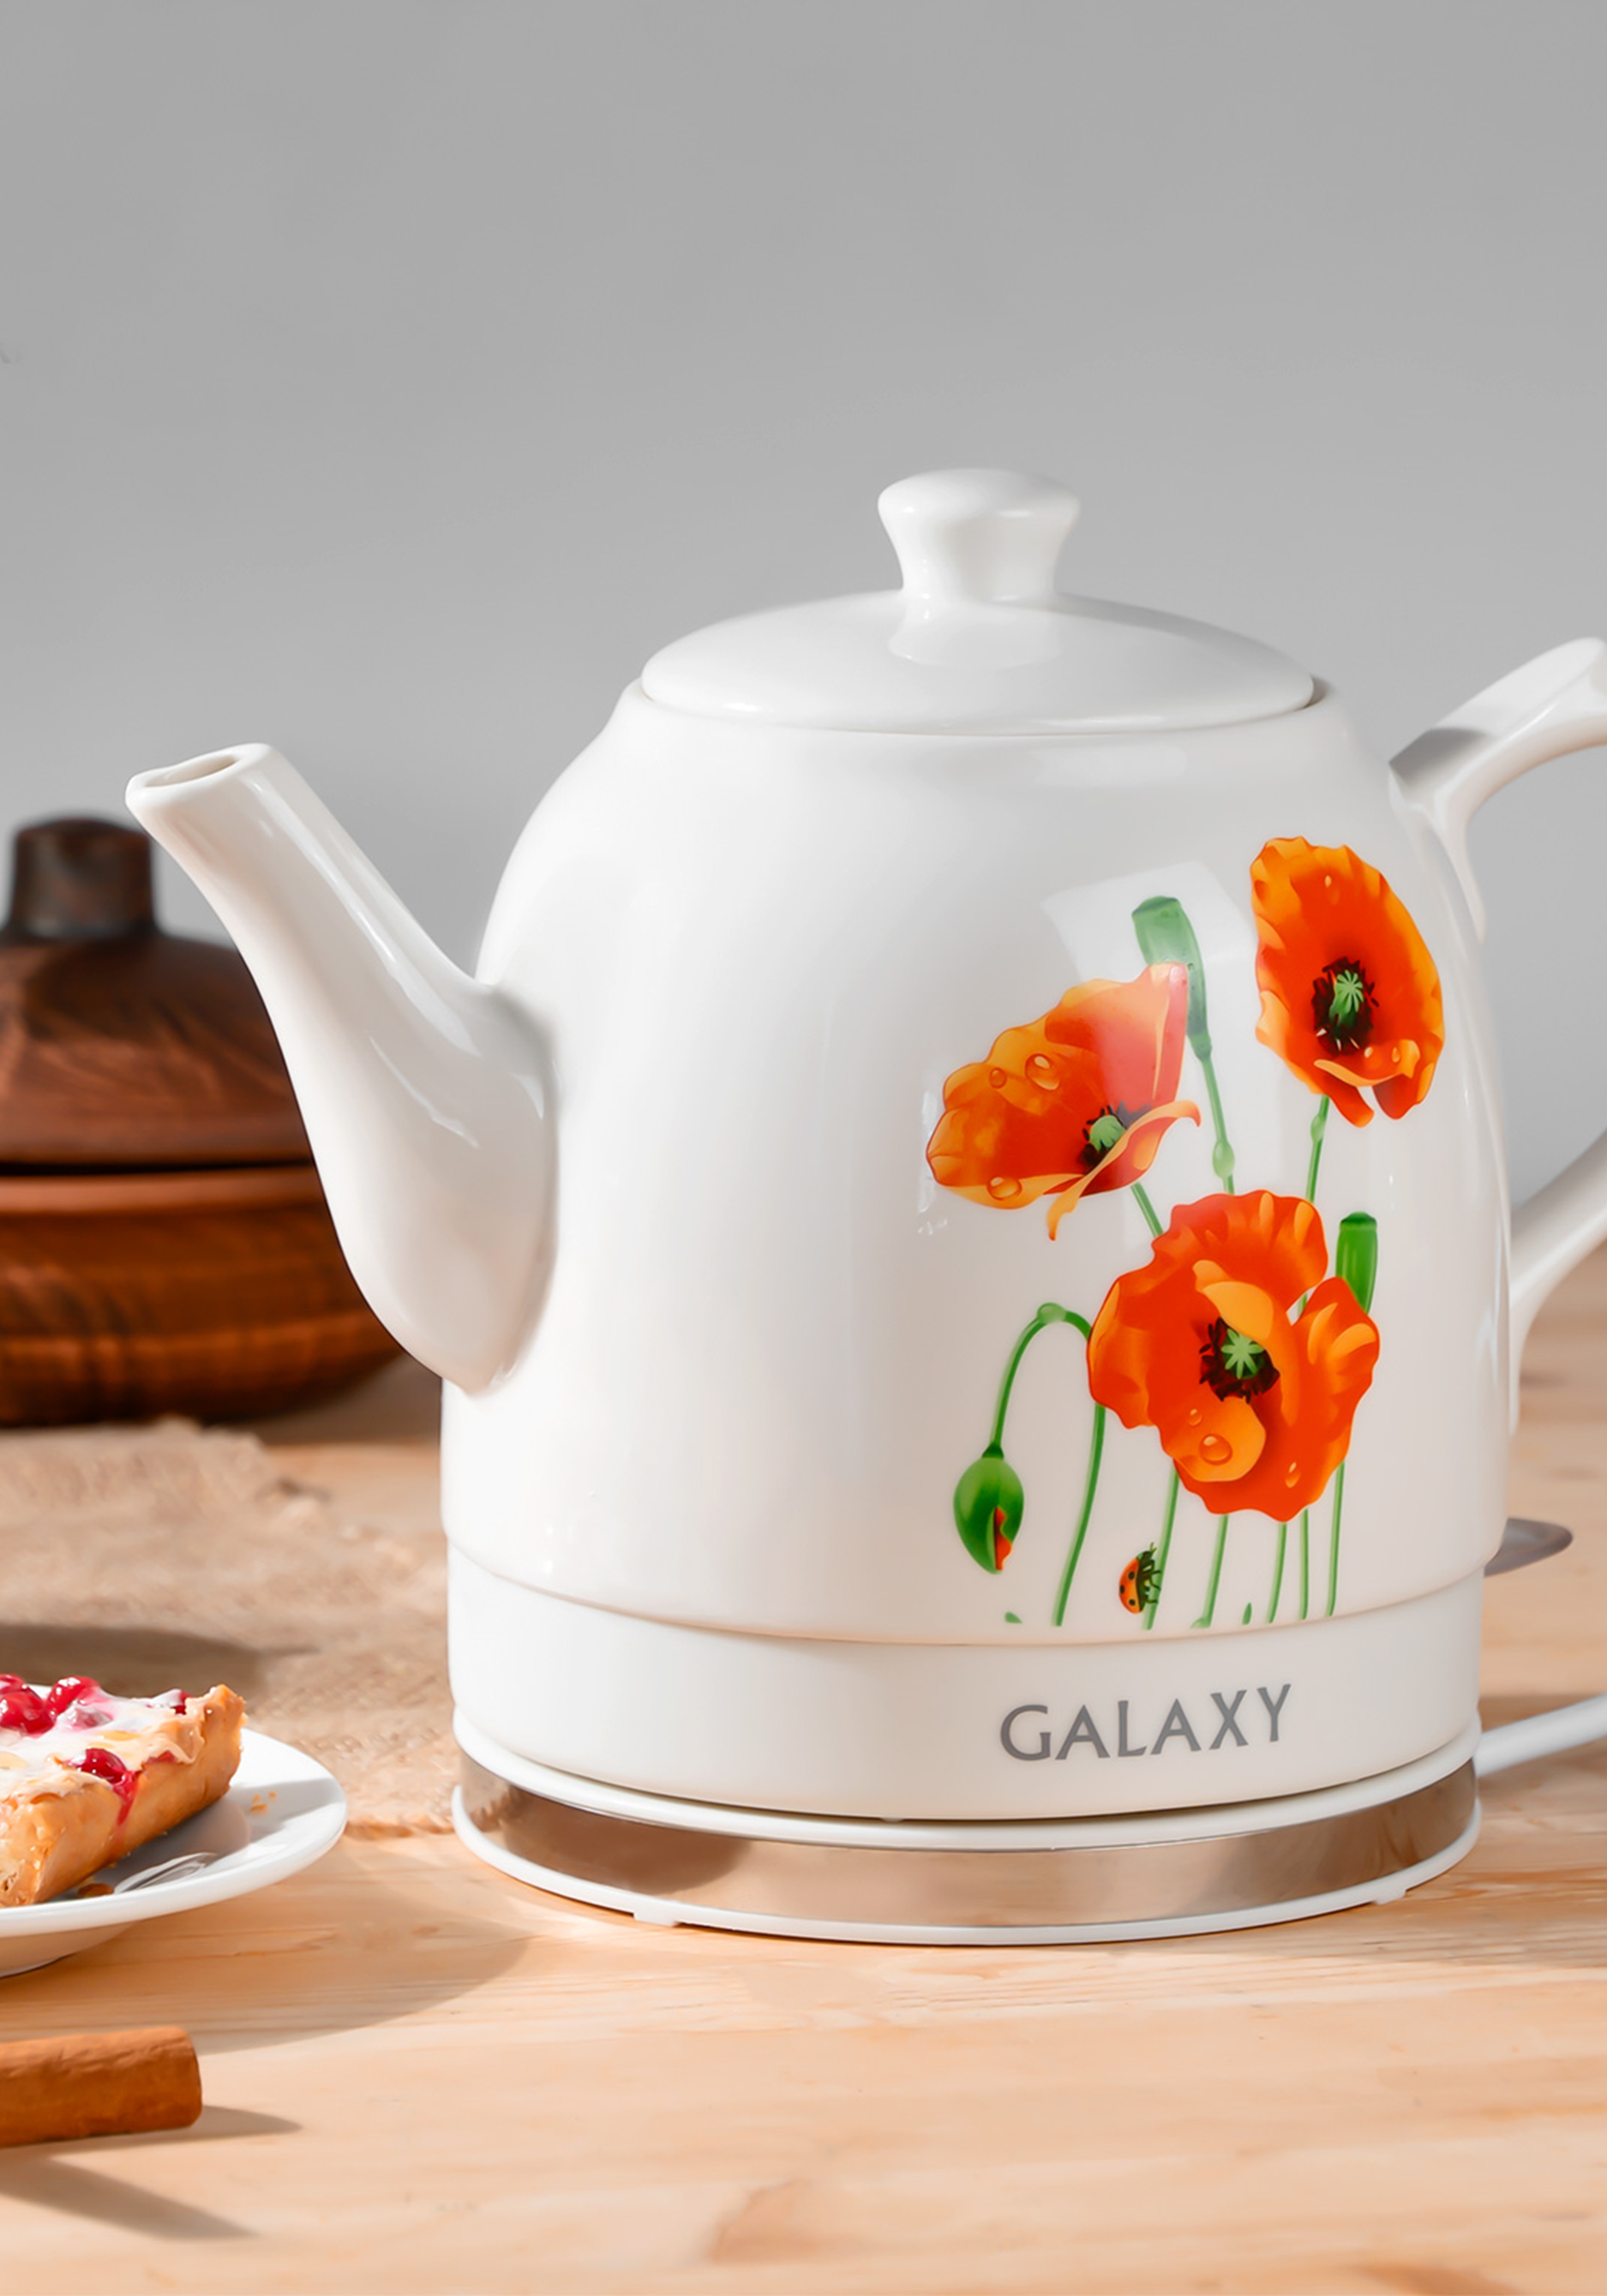 Электрический чайник с керамическим корпусом Galaxy, цвет белый